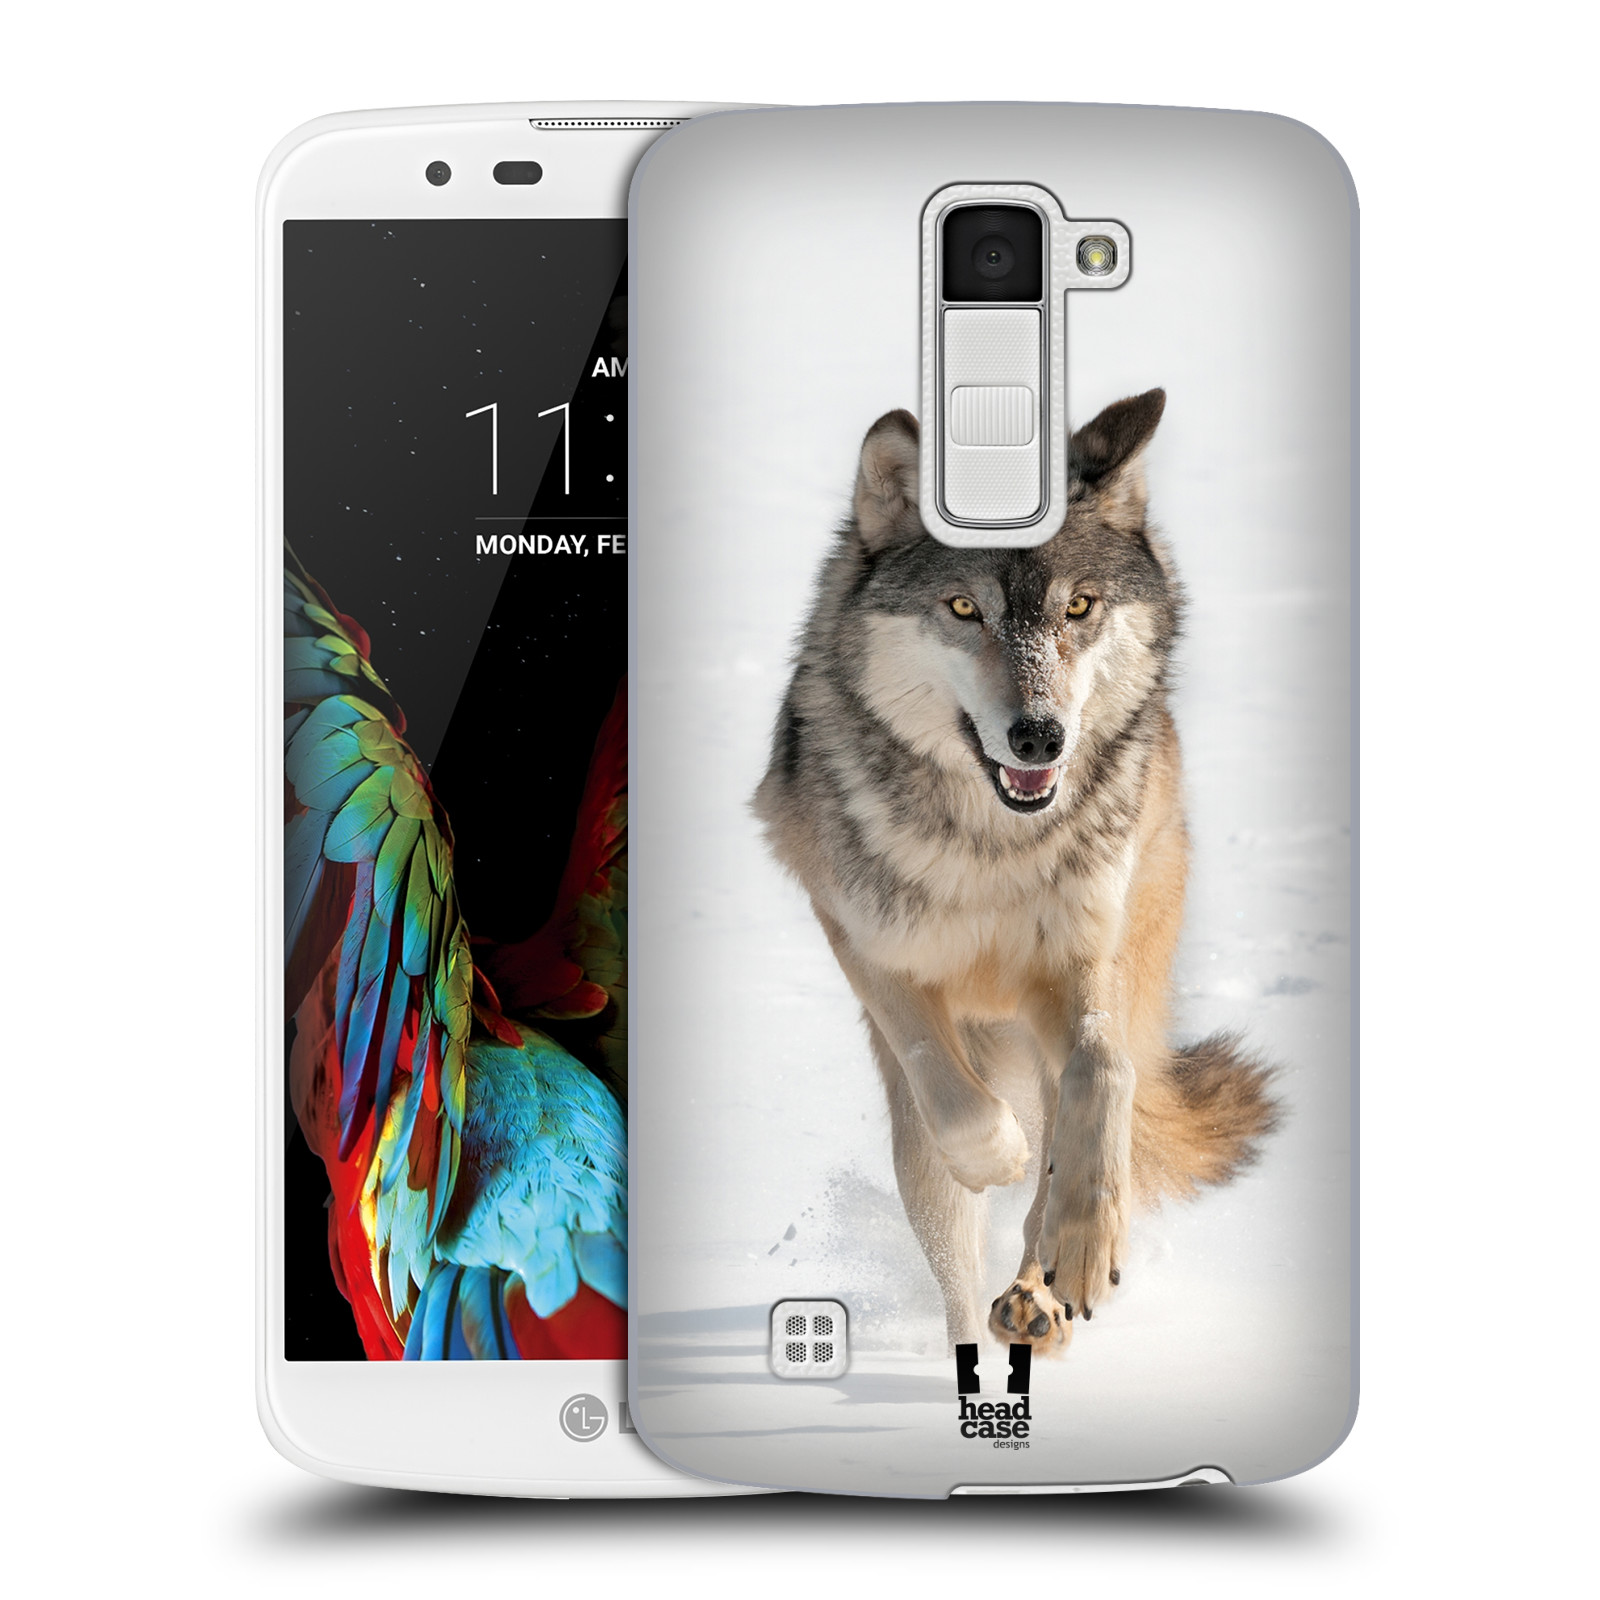 HEAD CASE plastový obal na mobil LG K10 vzor Divočina, Divoký život a zvířata foto BĚŽÍCÍ VLK